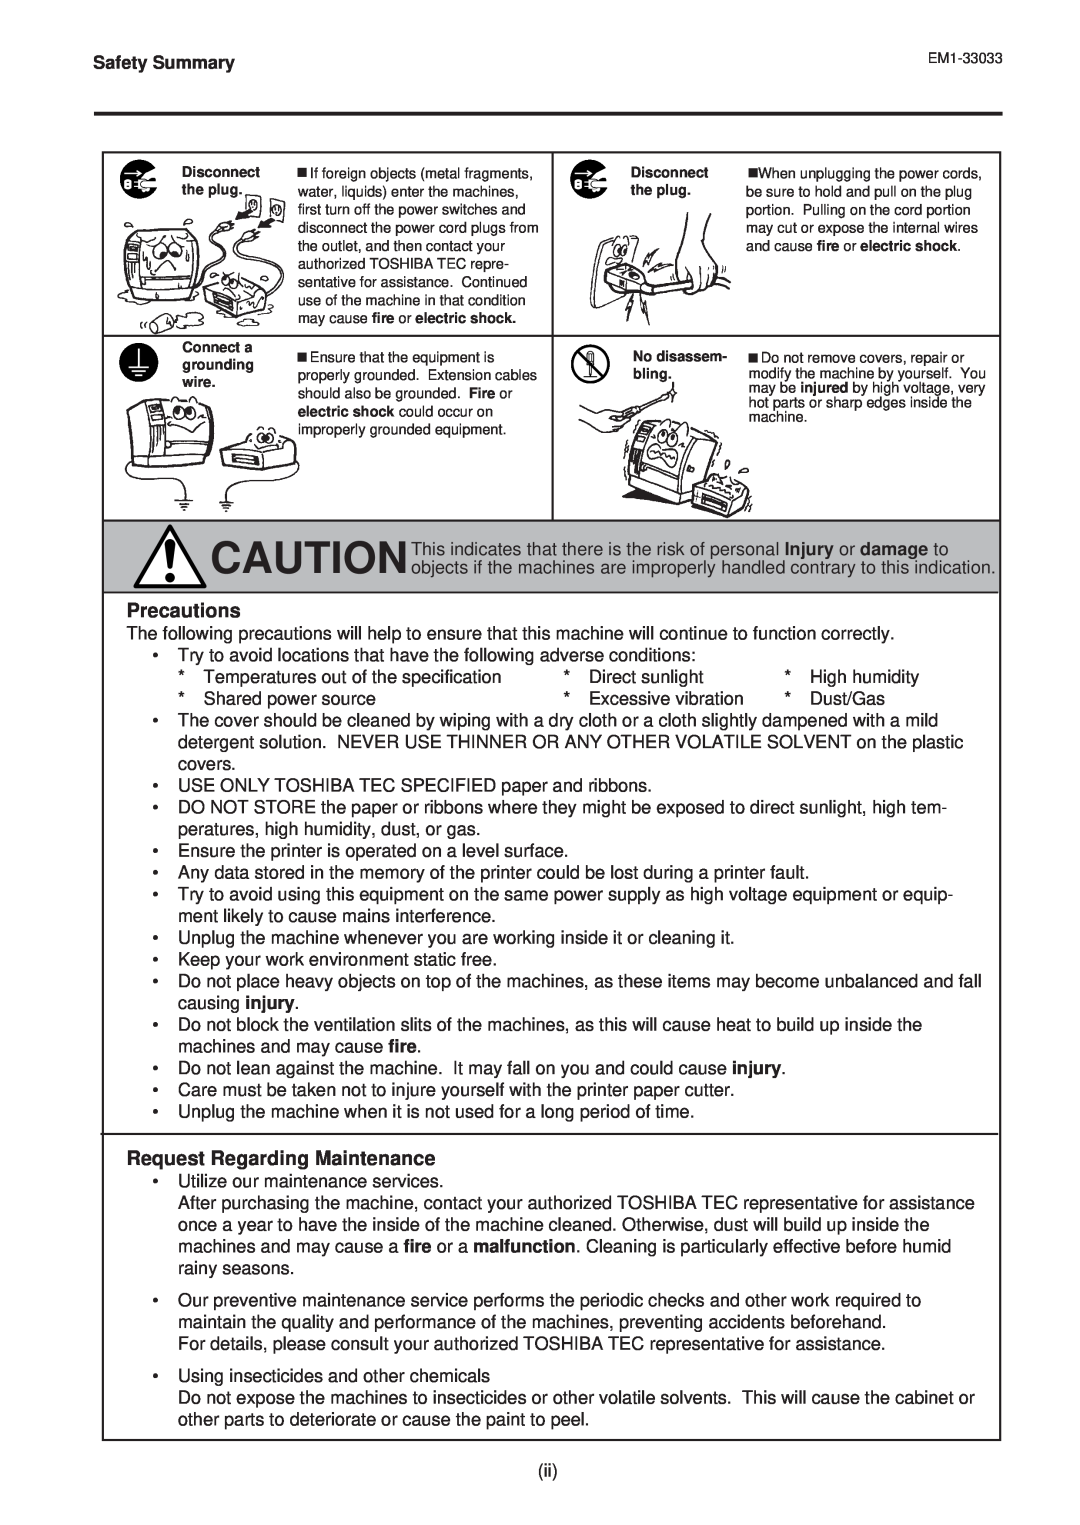 Toshiba EM1-33033E owner manual Precautions, Request Regarding Maintenance, Safety Summary 